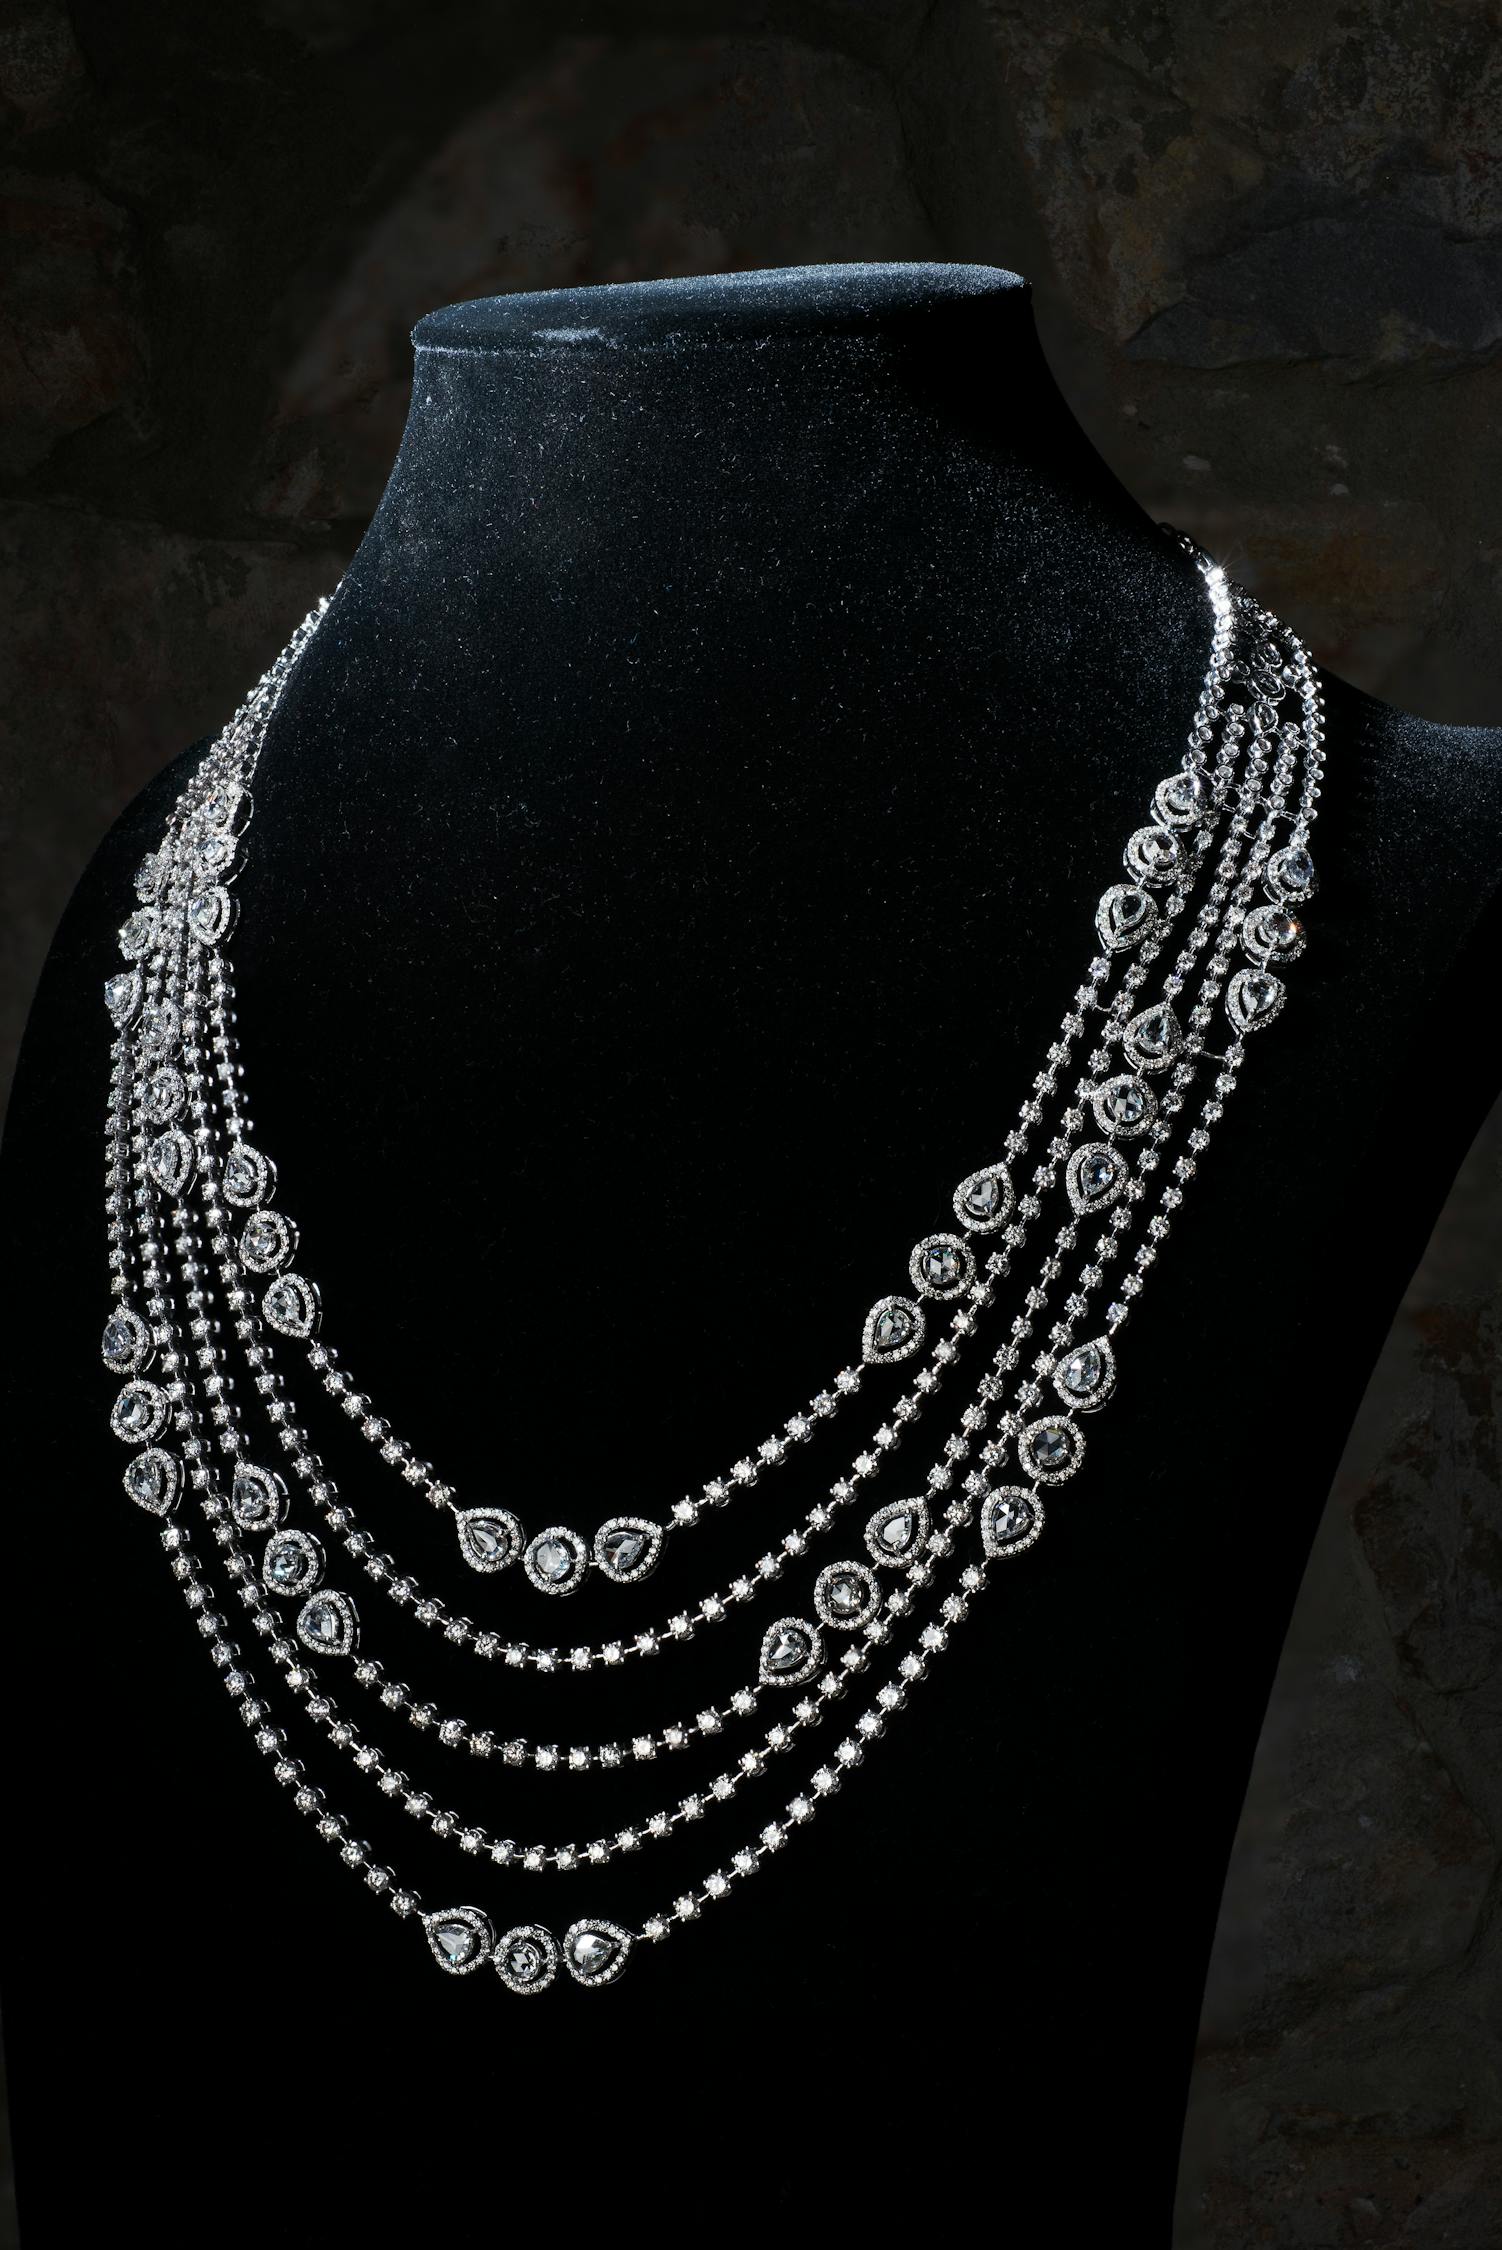 Free stock photo of diamond, diamond necklace